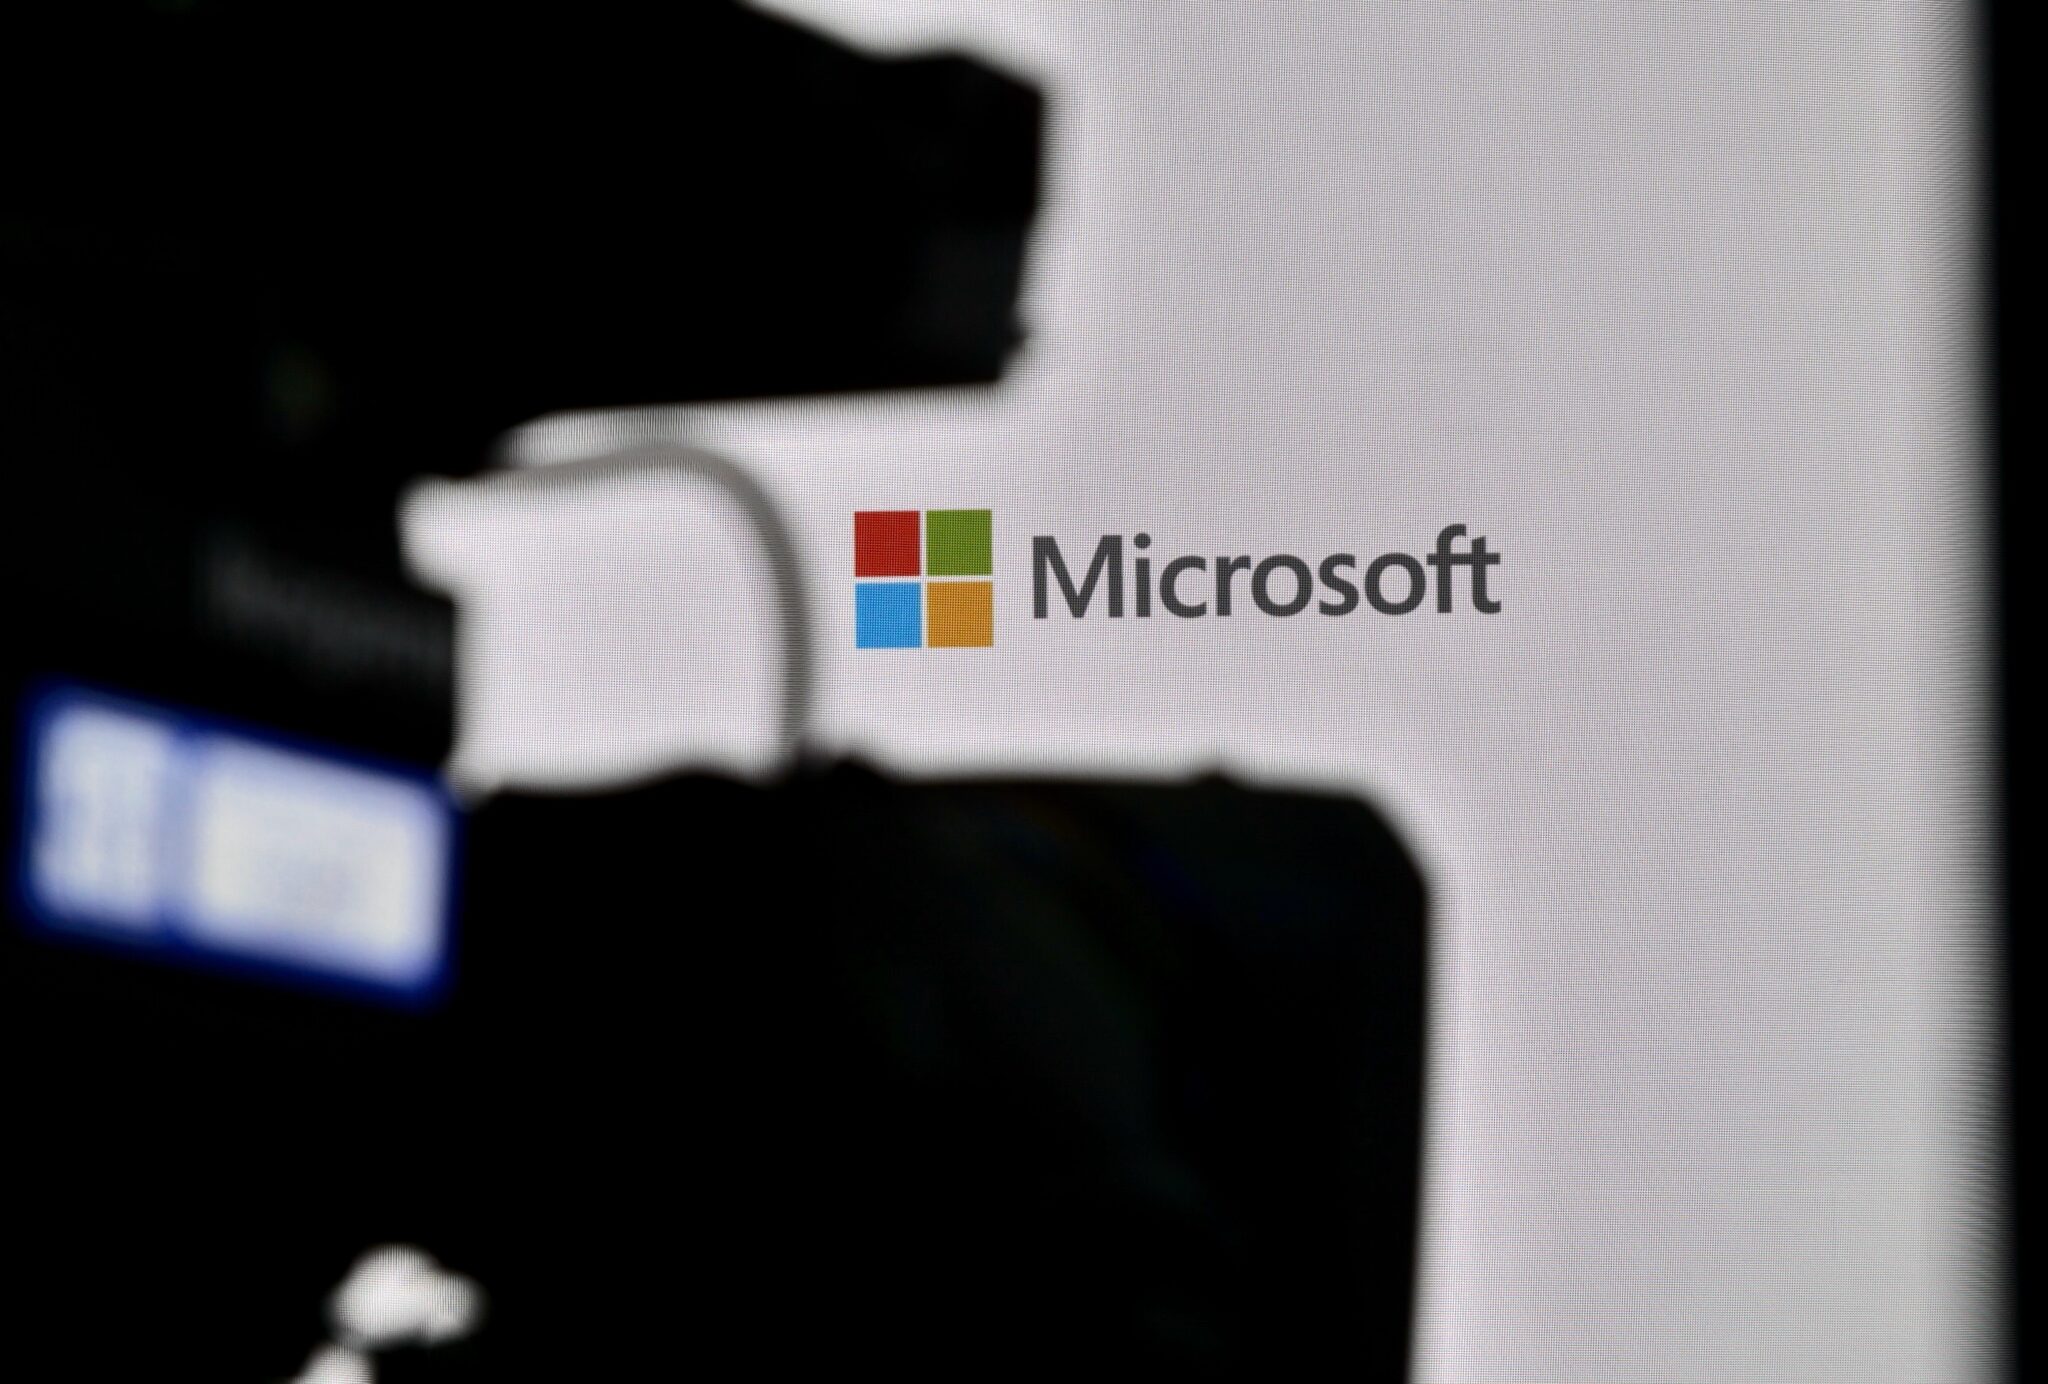 Microsoft försökte dölja sårbarheten i DALL-E, enligt en tjänsteman på företaget